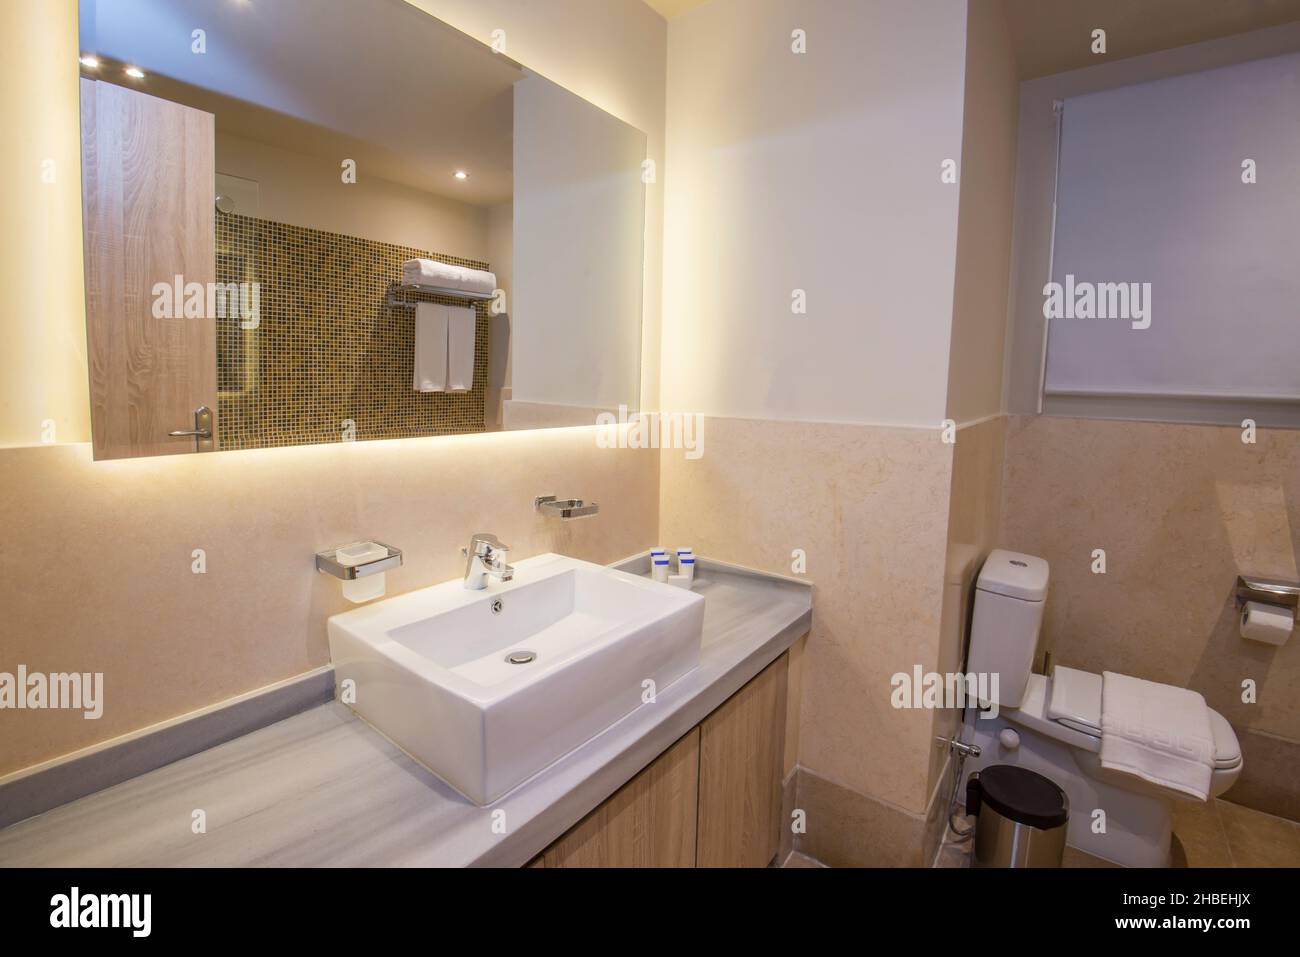 Décoration intérieure d'un luxueux show home salle de bains moderne avec douche toilettes et lavabo Banque D'Images